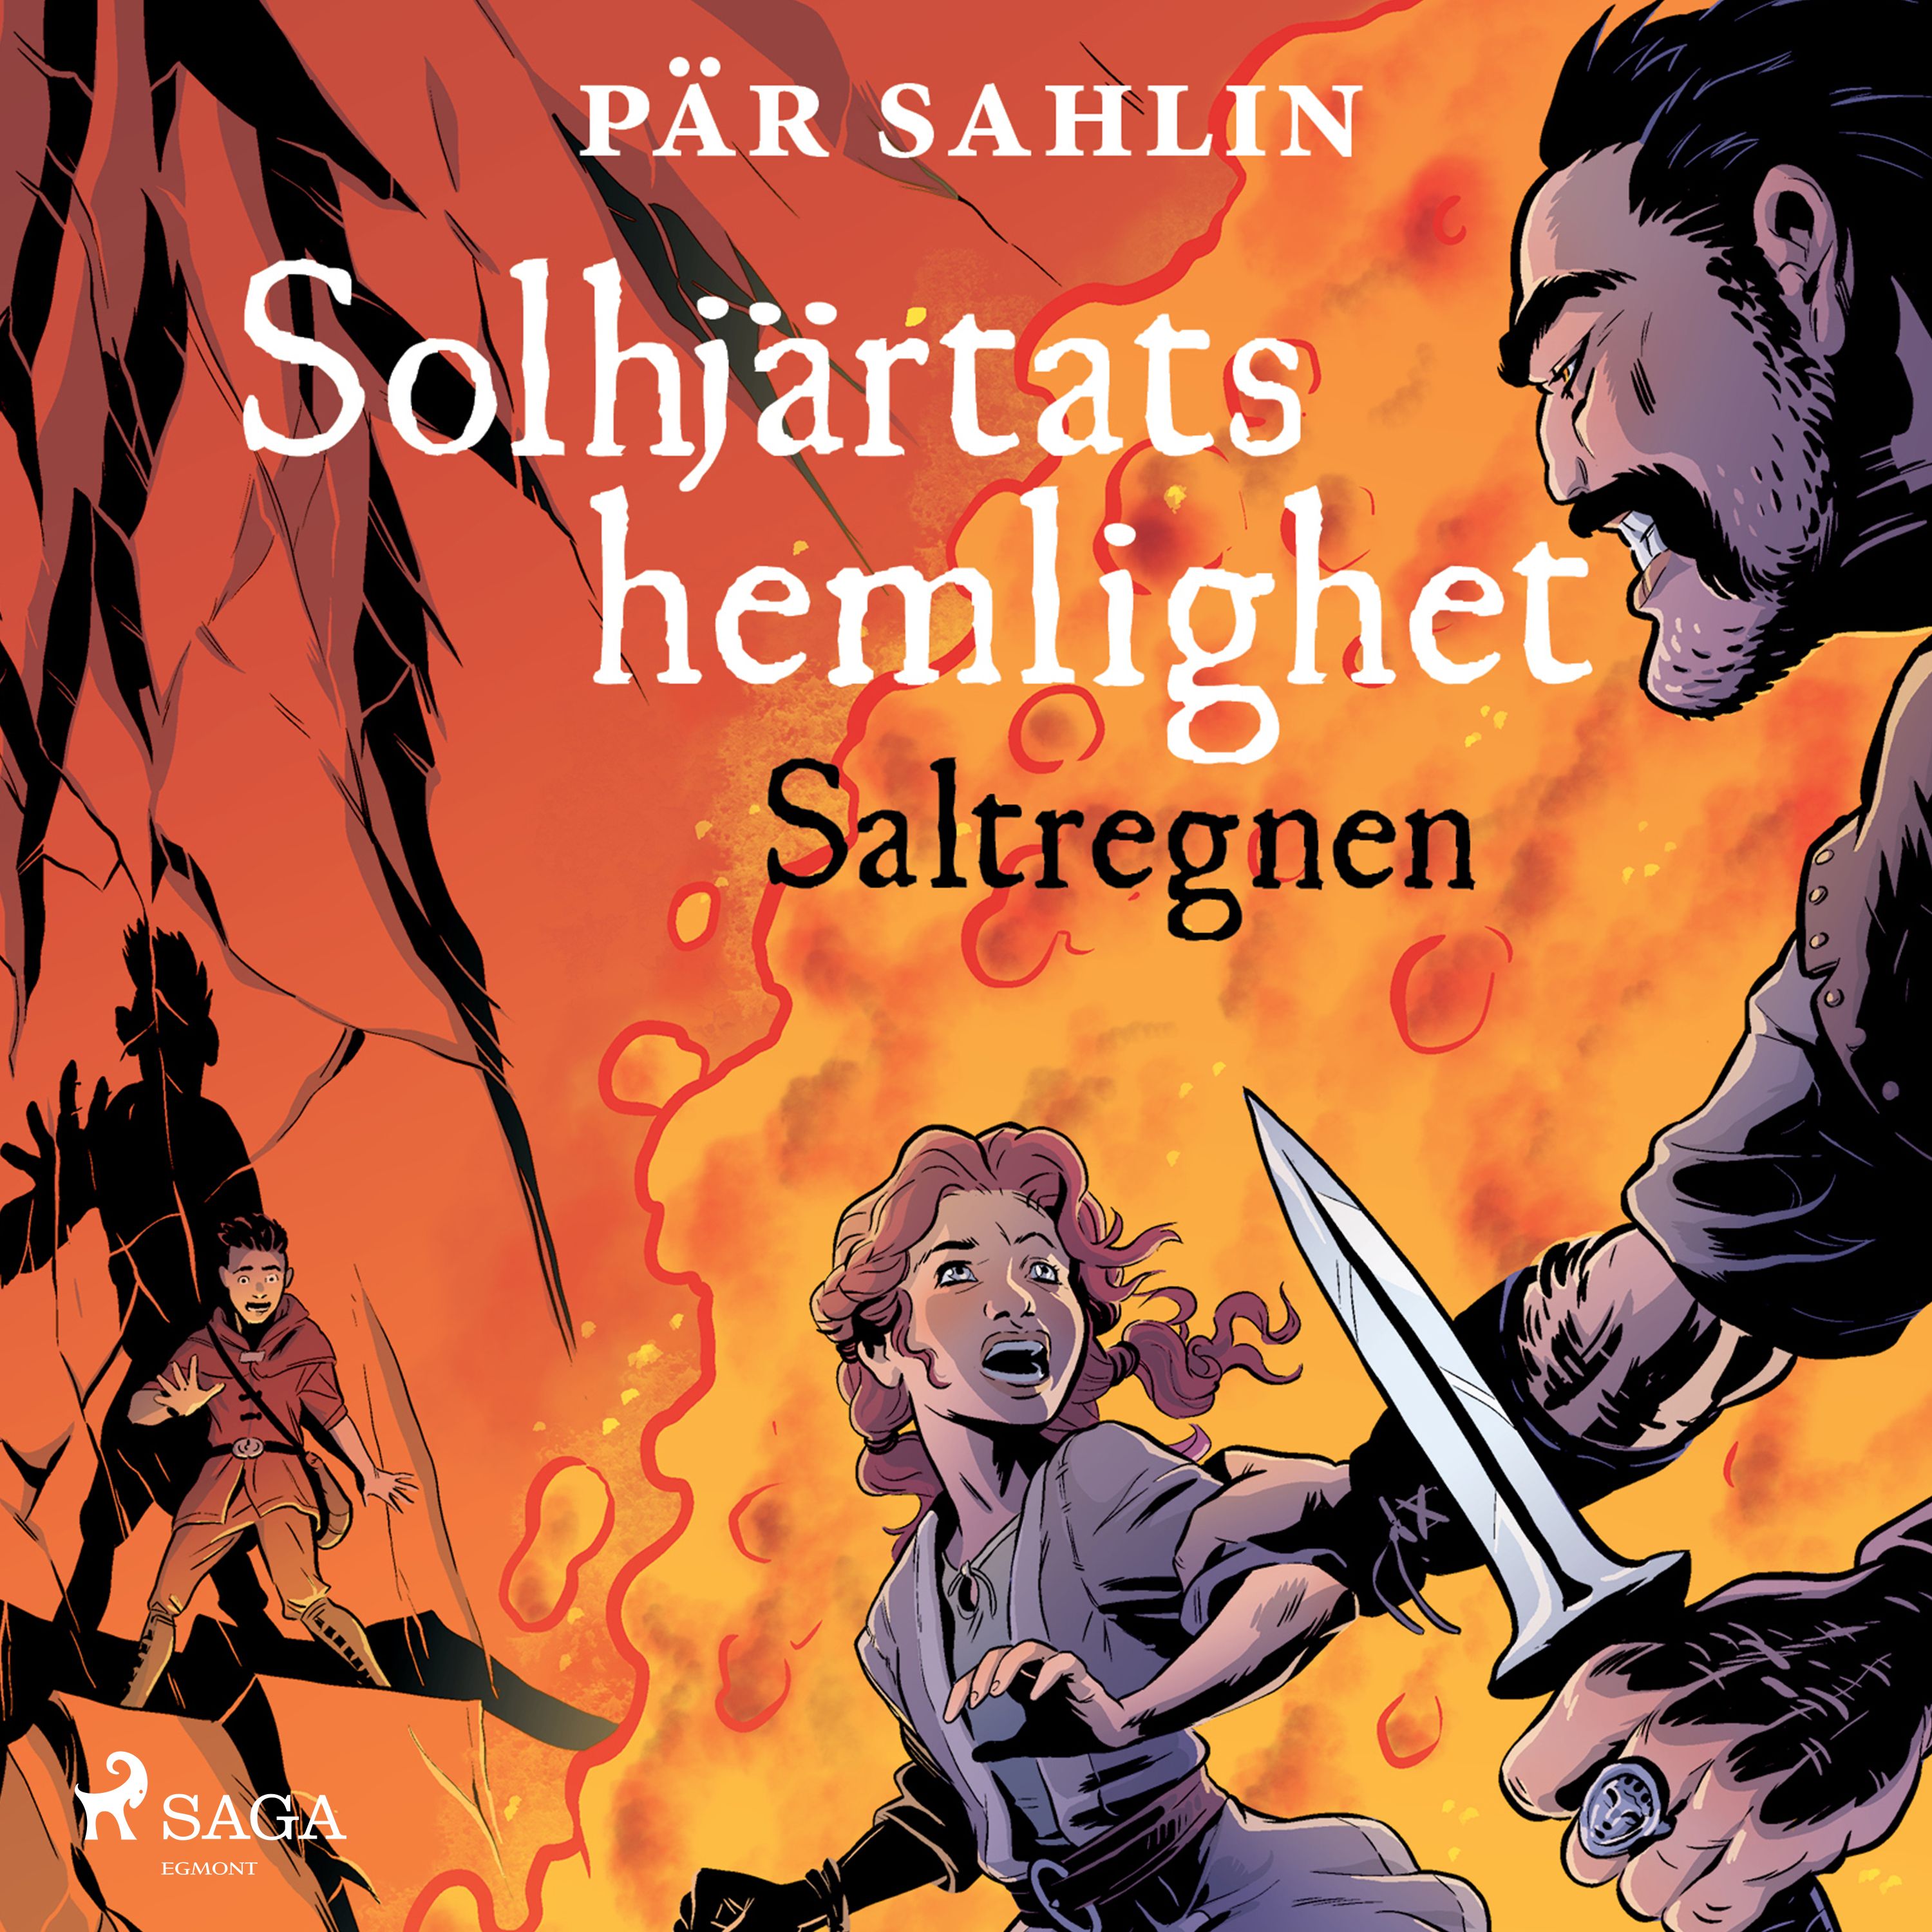 Solhjärtats hemlighet - Saltregnen, audiobook by Pär Sahlin